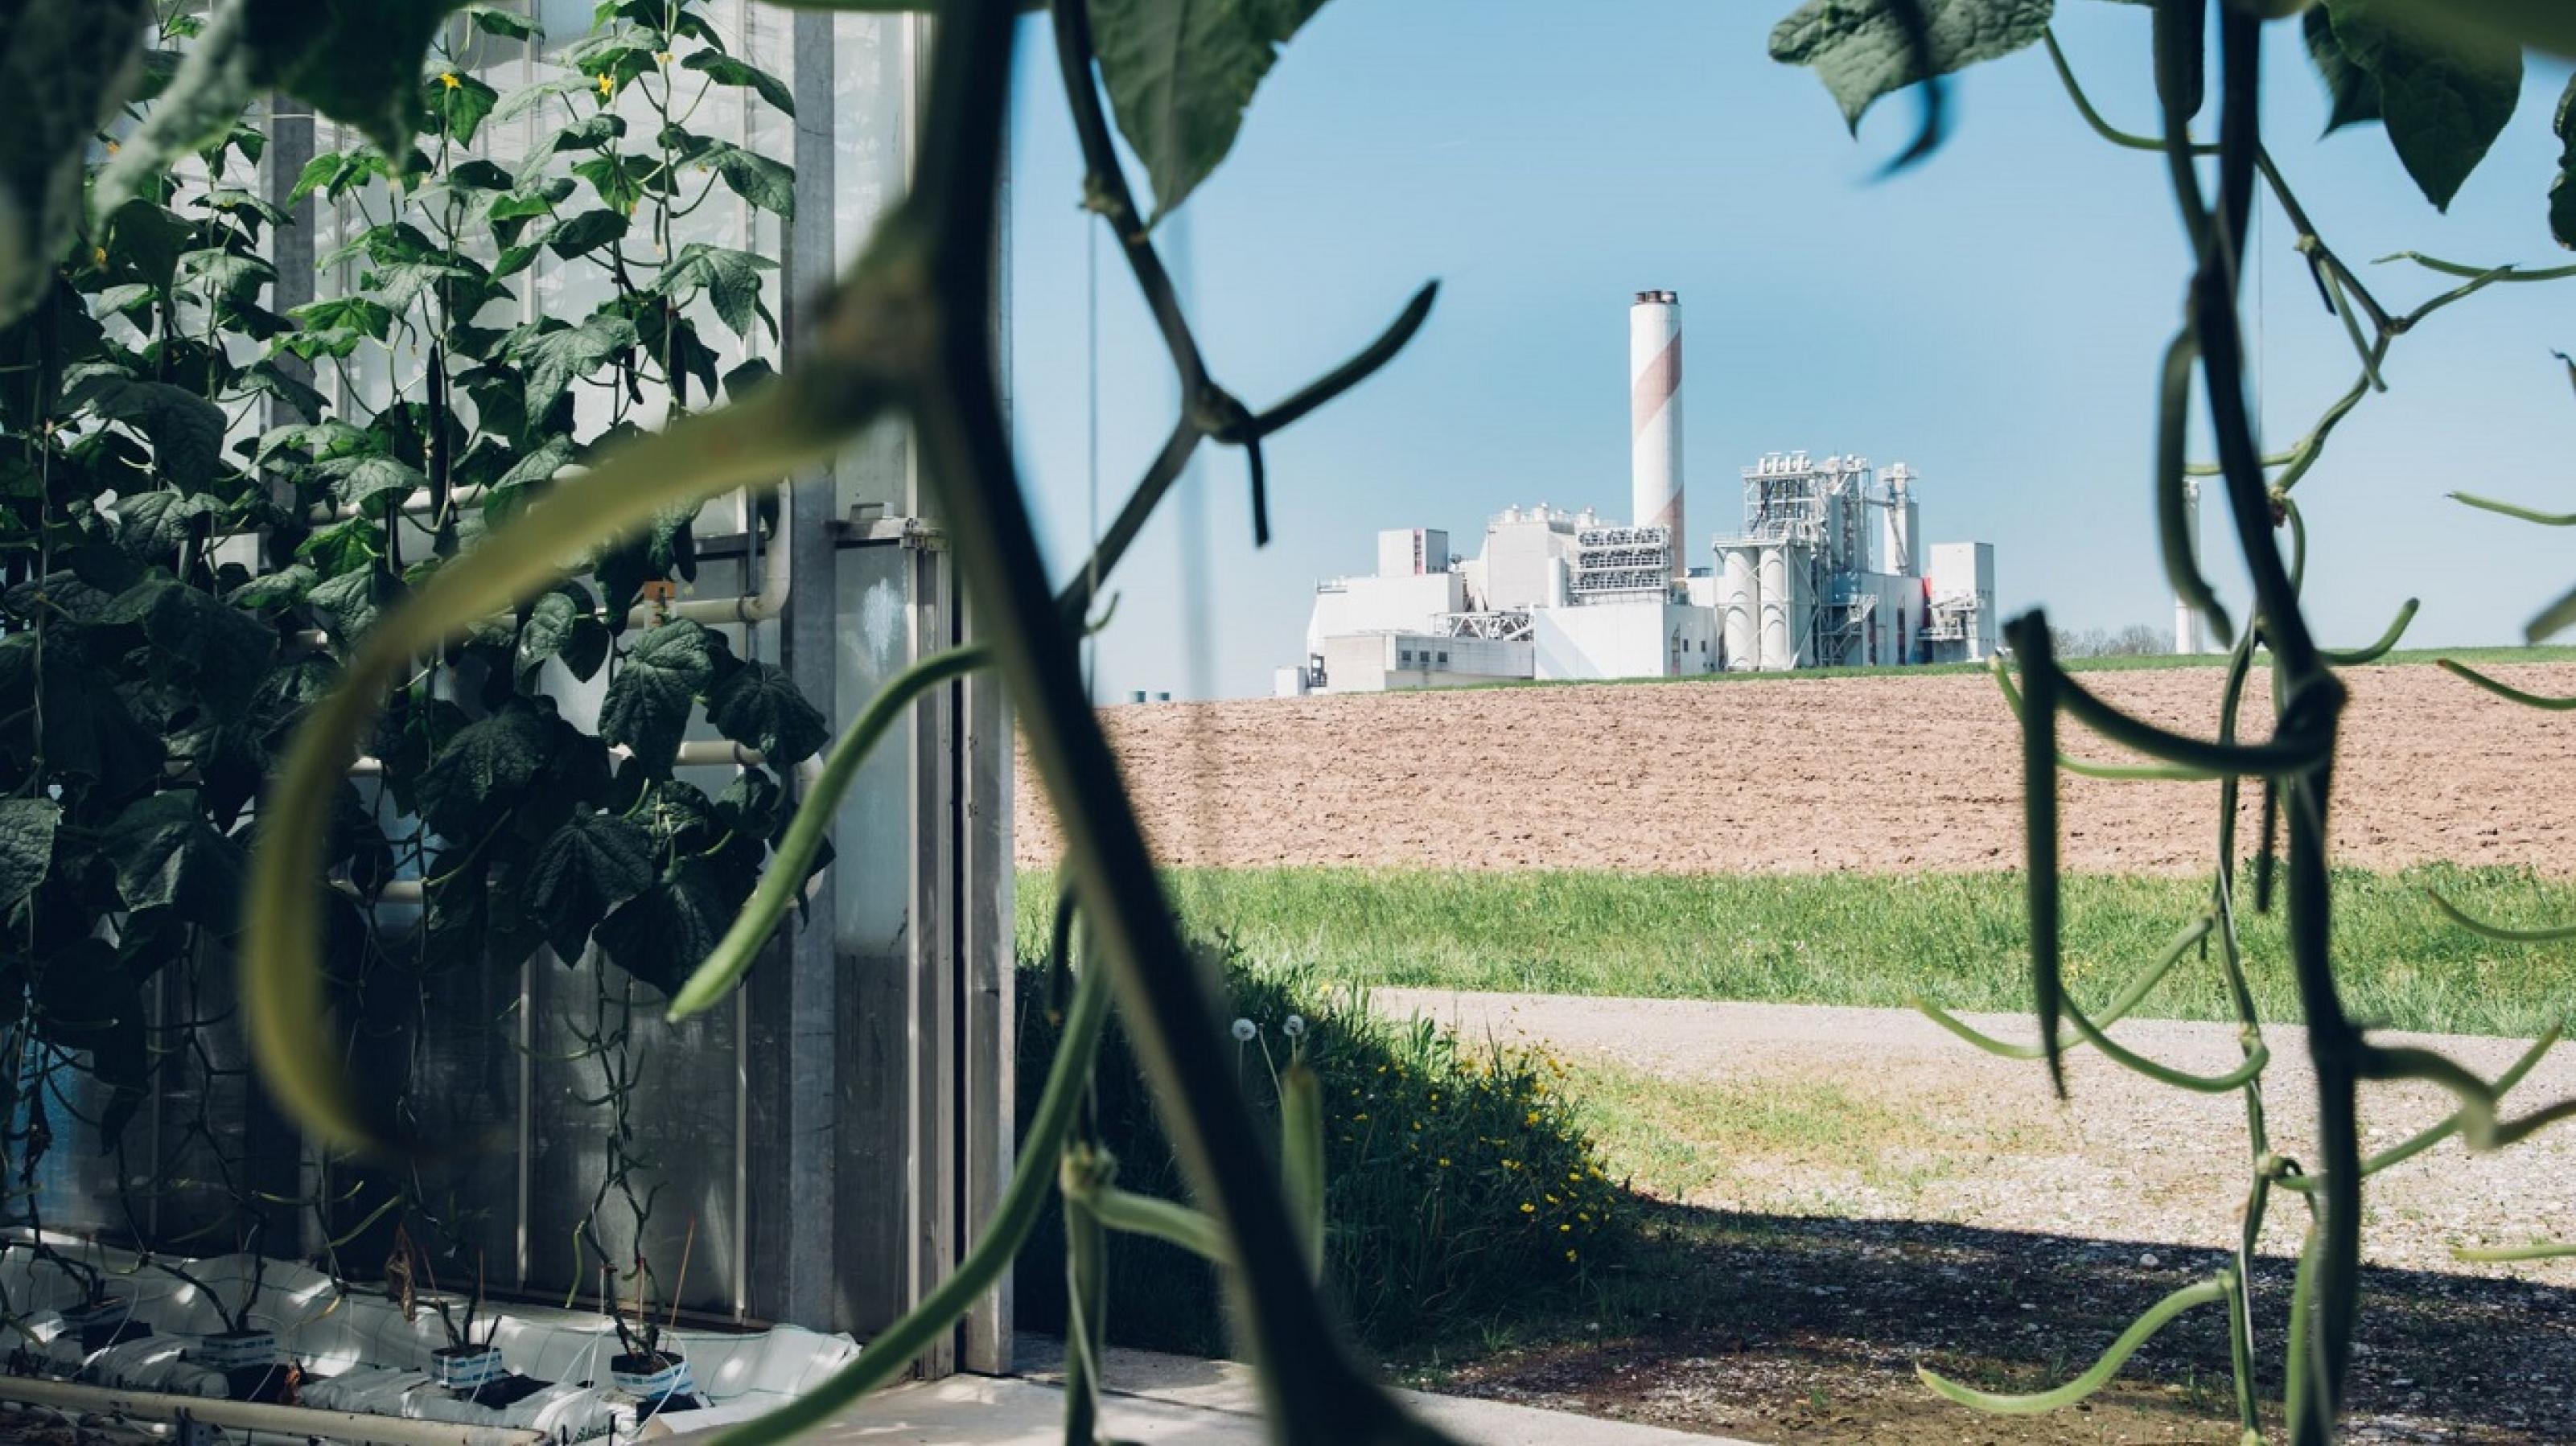 Climeworks baute und betreibt die weltweit erste kommerzielle Direktabscheideanlage, die 900 Tonnen CO2 pro Jahr aus der Umgebungsluft entfernt. Das hochreine CO2 wird an ein Nachbargewächshaus geliefert, wodurch das Wachstum von Gemüse und Salat um bis zu 20 Prozent gesteigert wird.